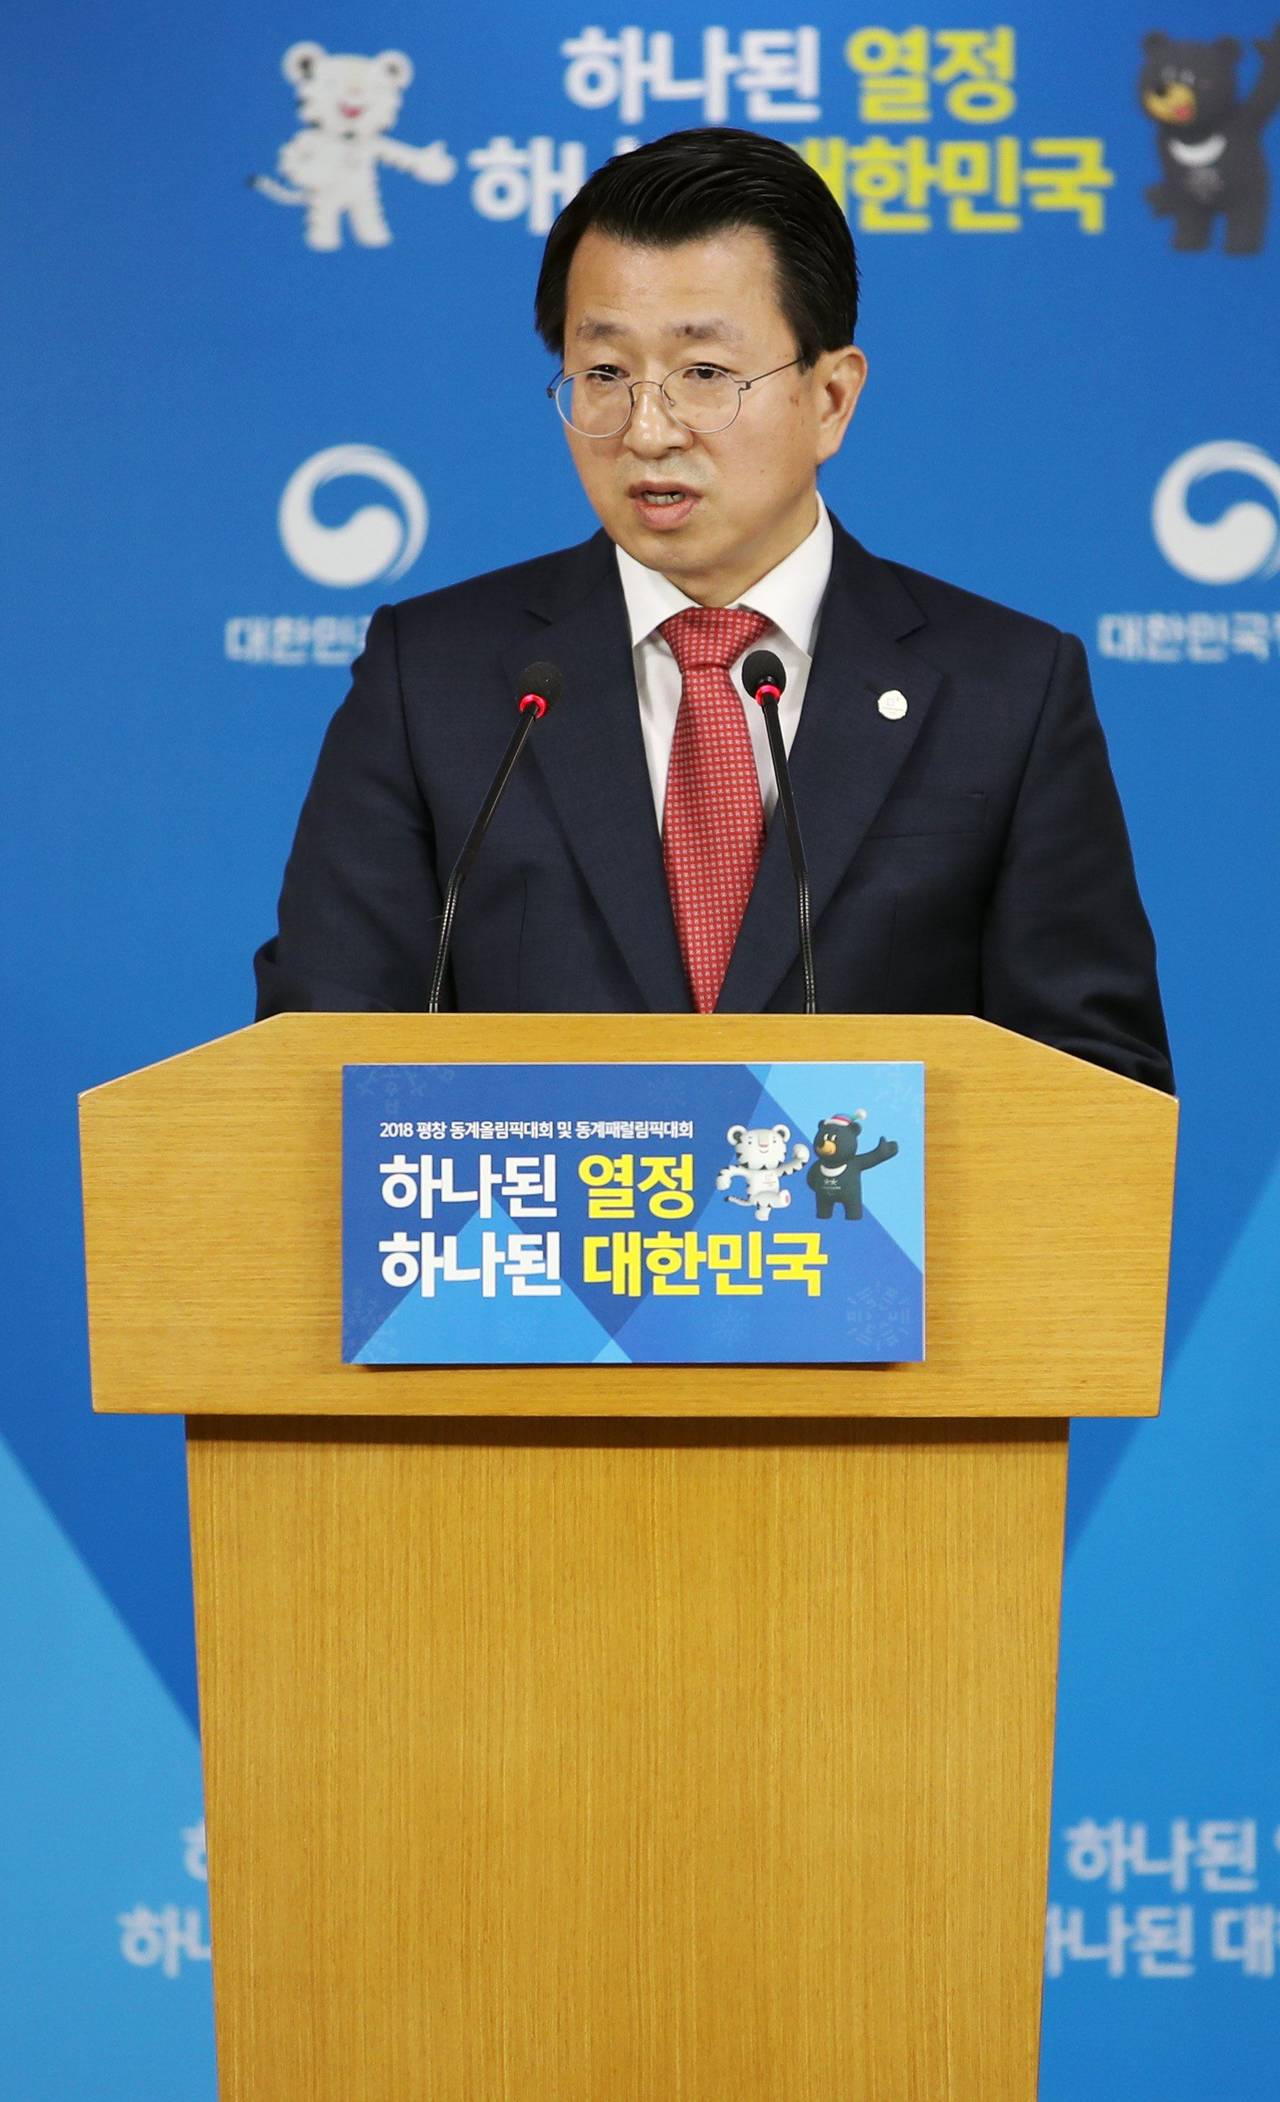 Tema. El tema central será la posible participación norcoreana en Juegos Olímpicos de Invierno 2018. (EFE)